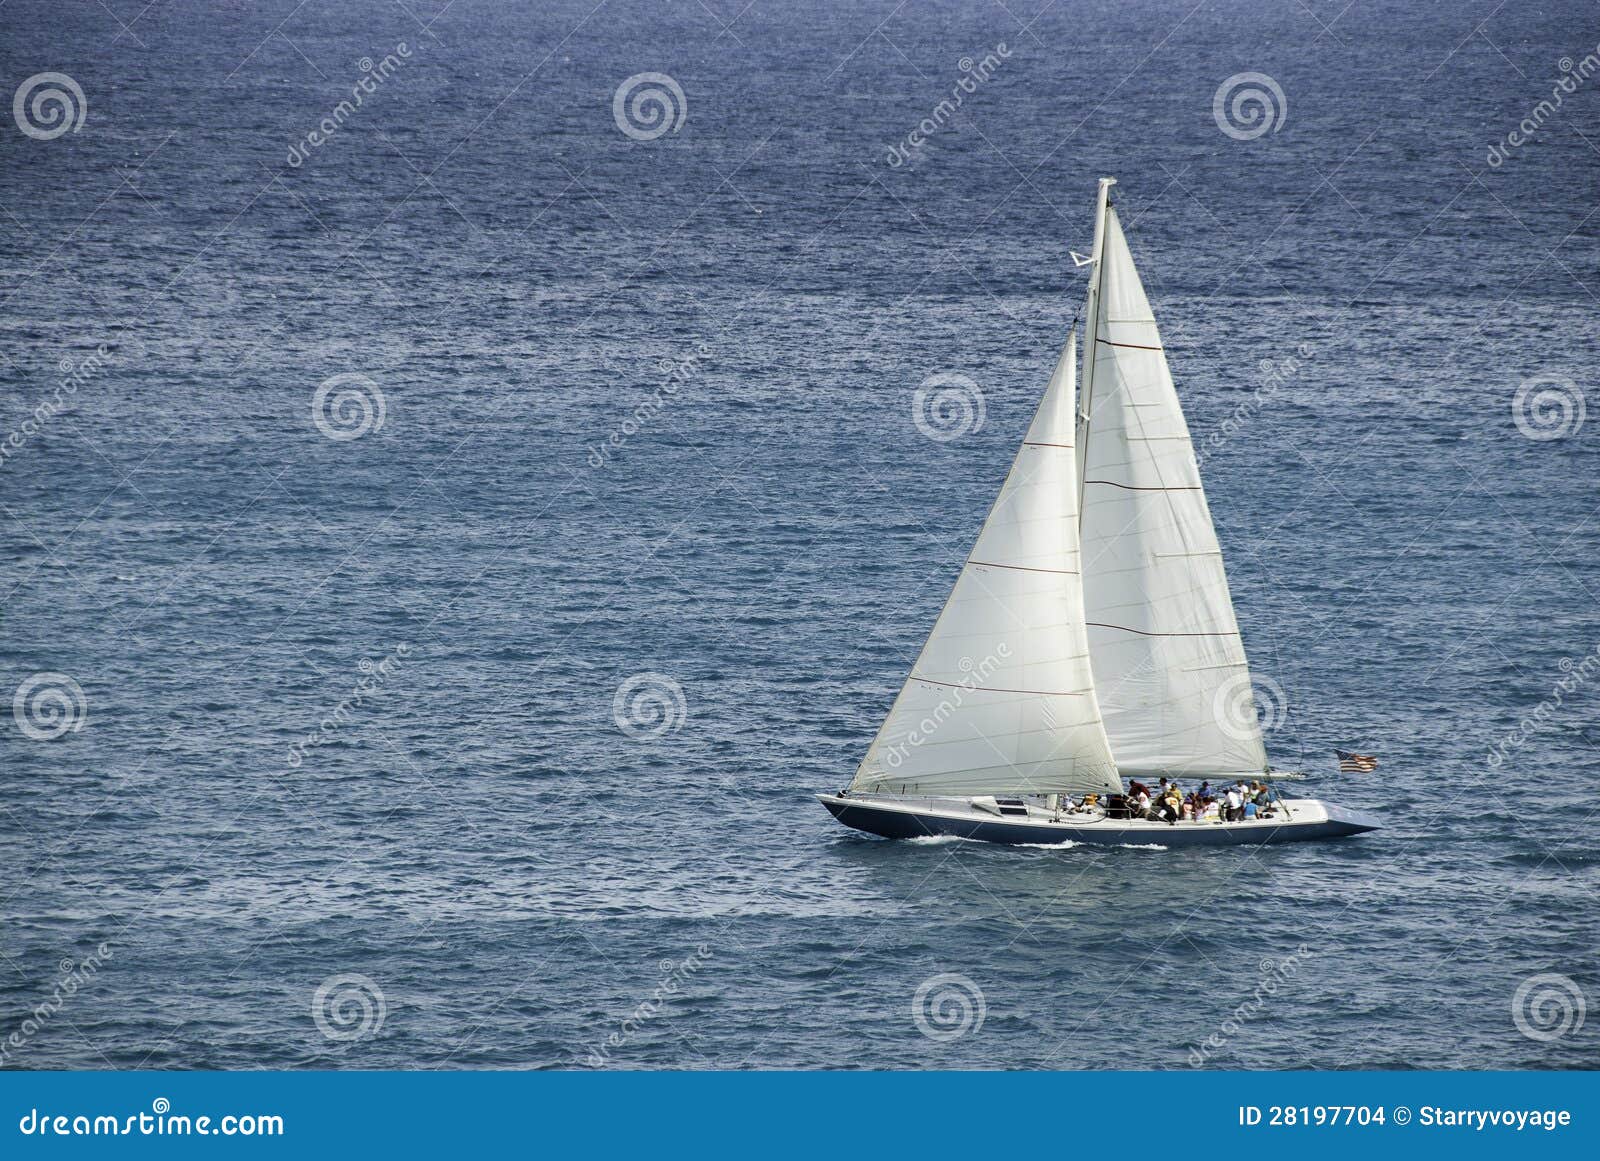 racing sloop in the caribbean